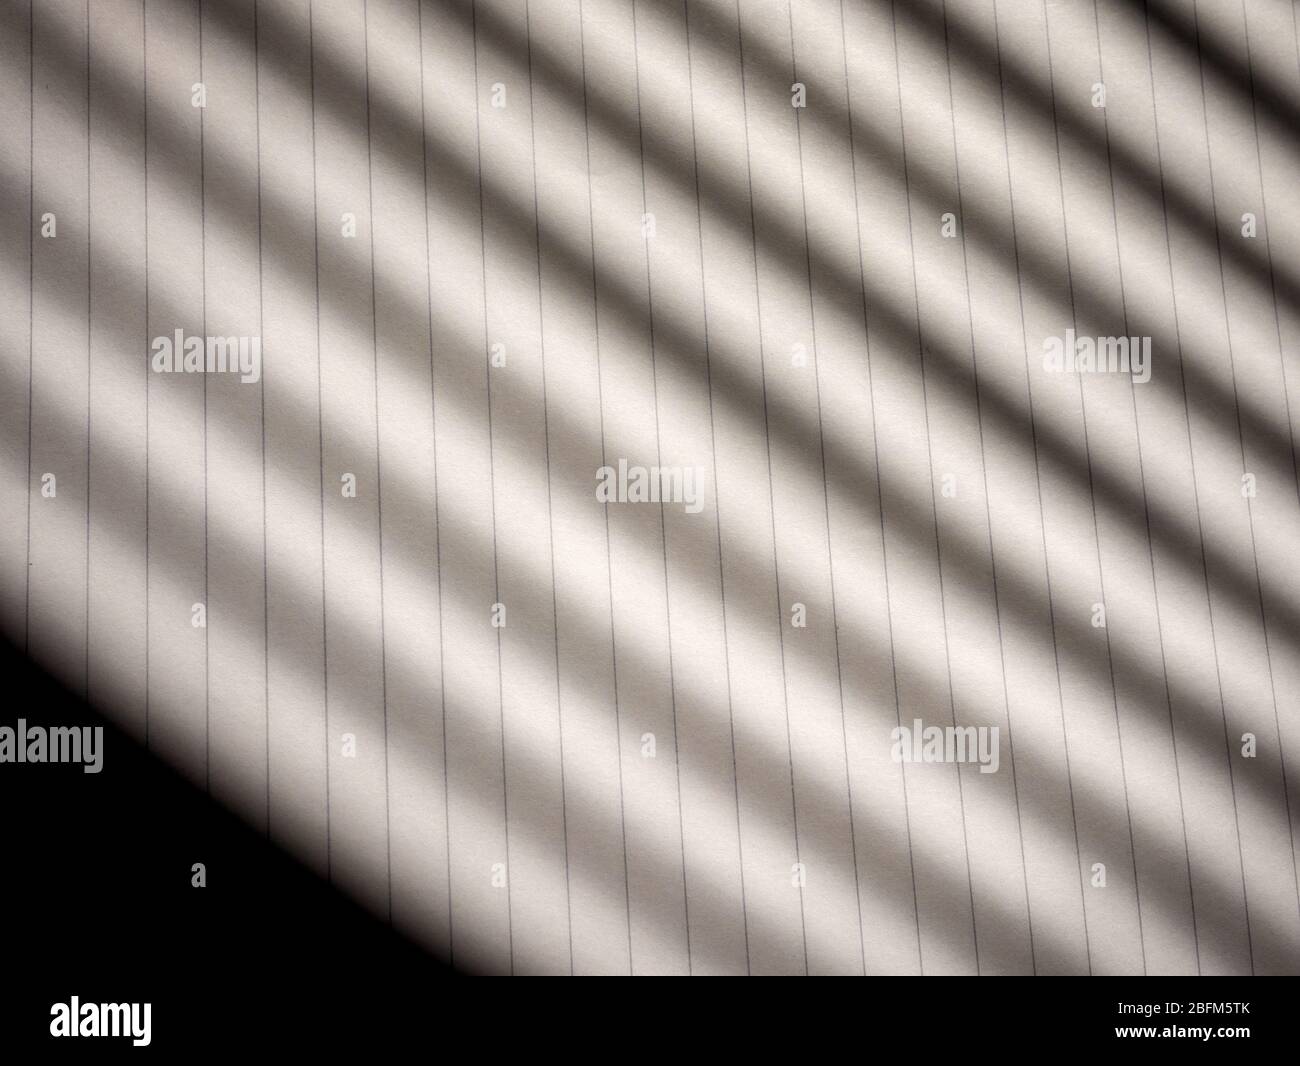 Schatten, die von Jalousien auf Papier geworfen werden Stockfoto